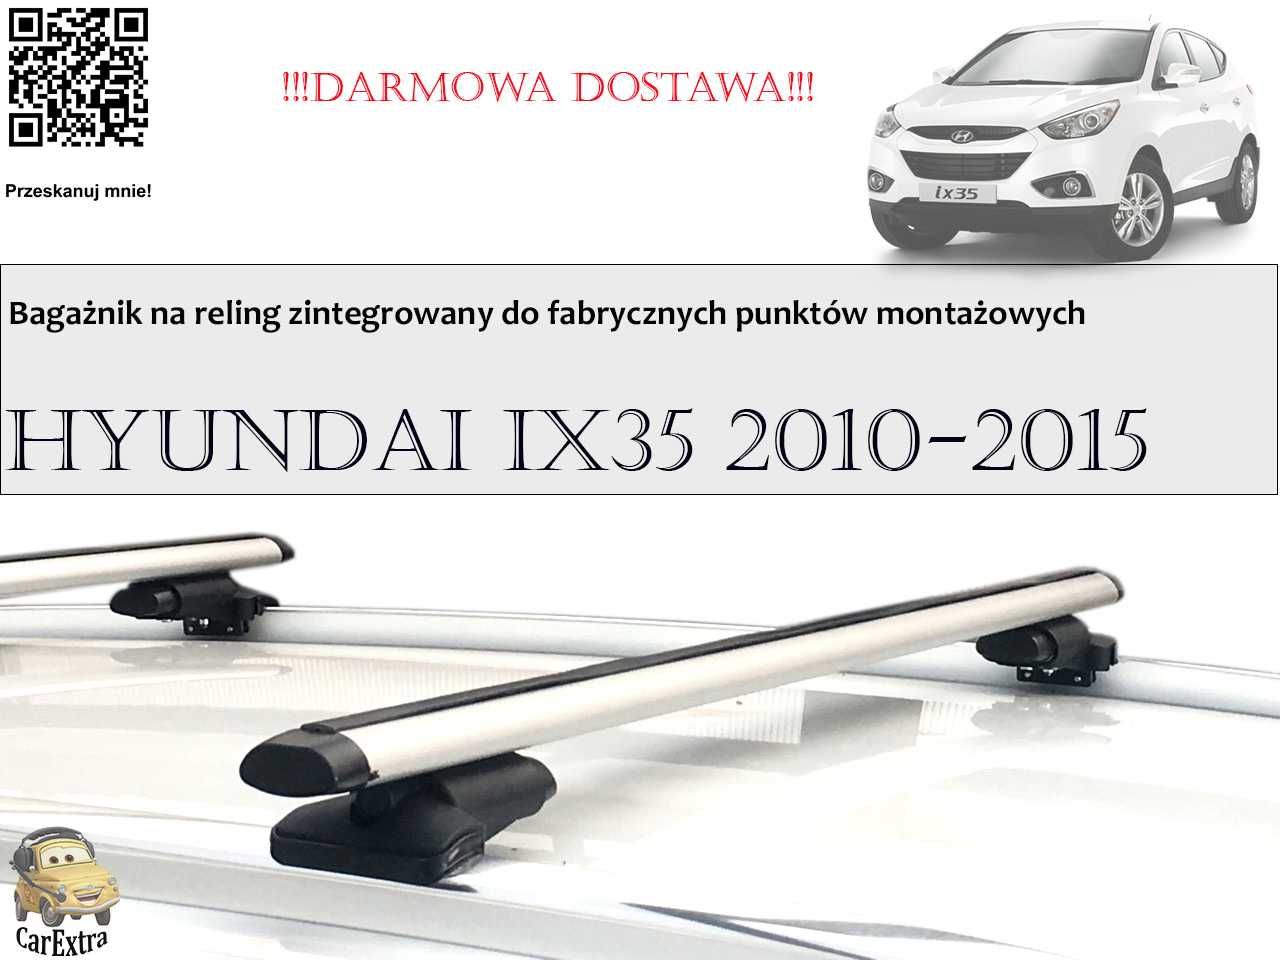 Bagażnik Dachowy Hyundai IX35 2010 -15